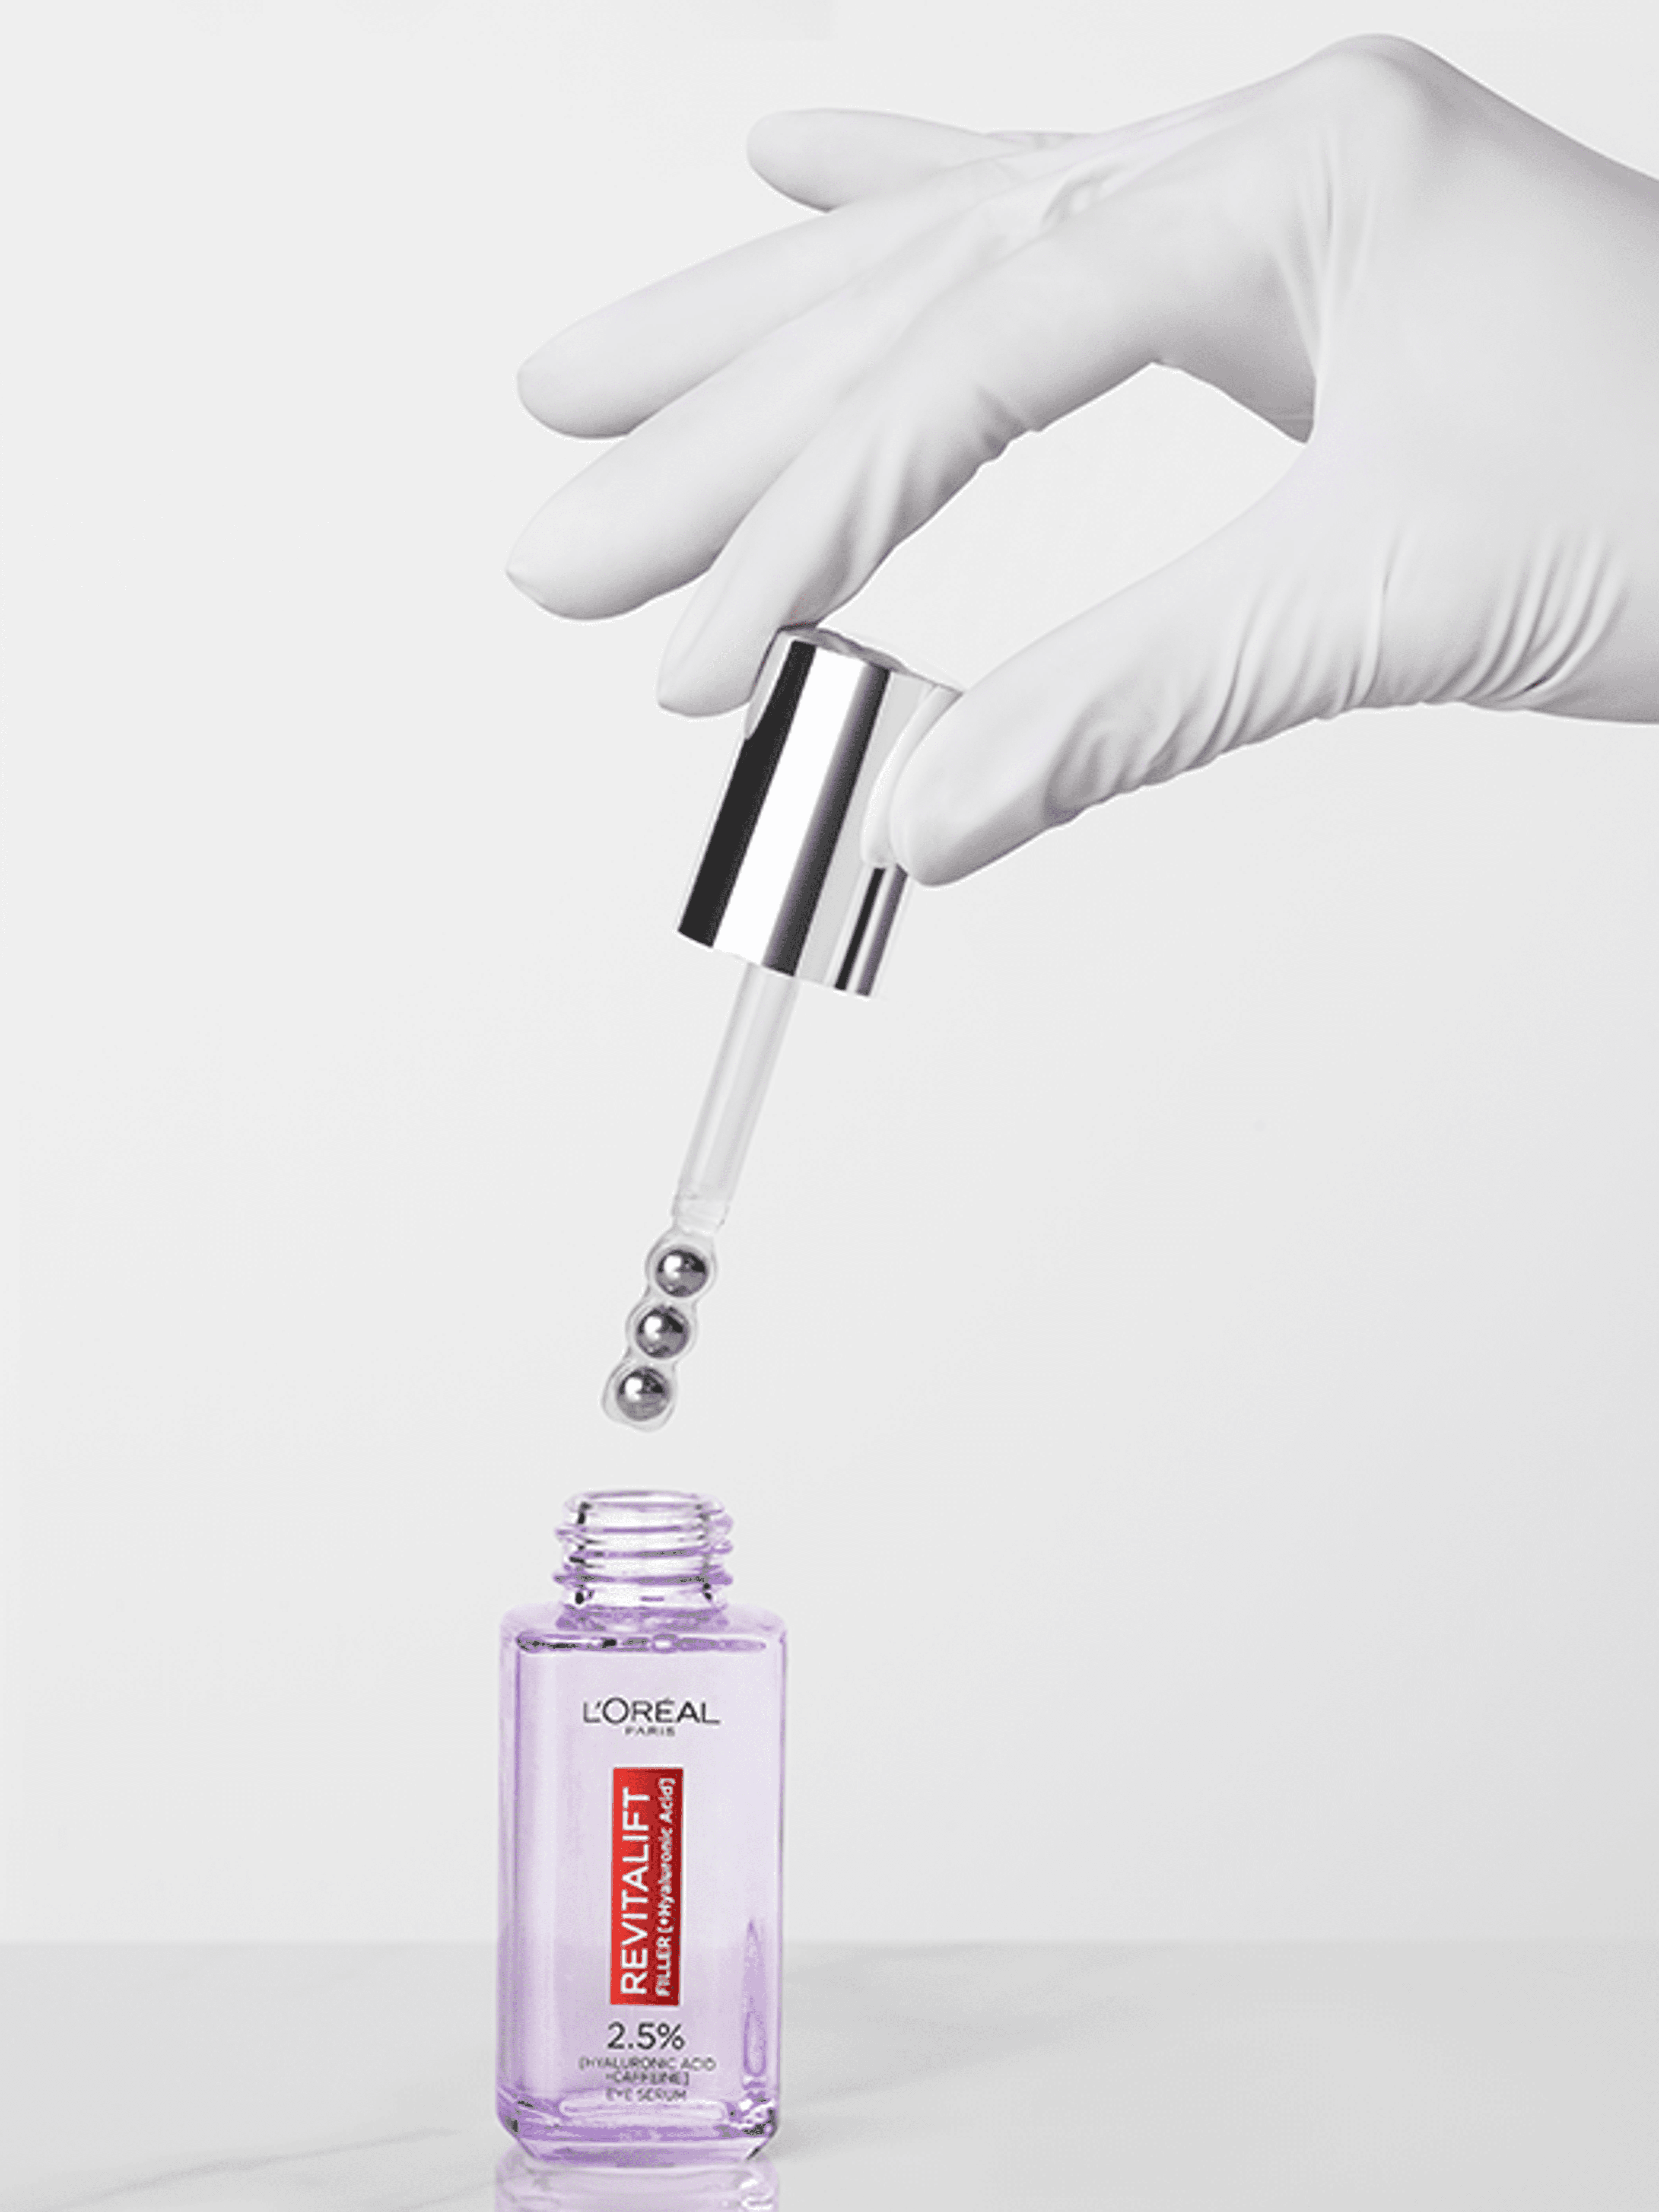 L'Oréal Paris Revitalift Filler szemkörnyék szérum 2,5% hialuronsavval - 20 ml-4